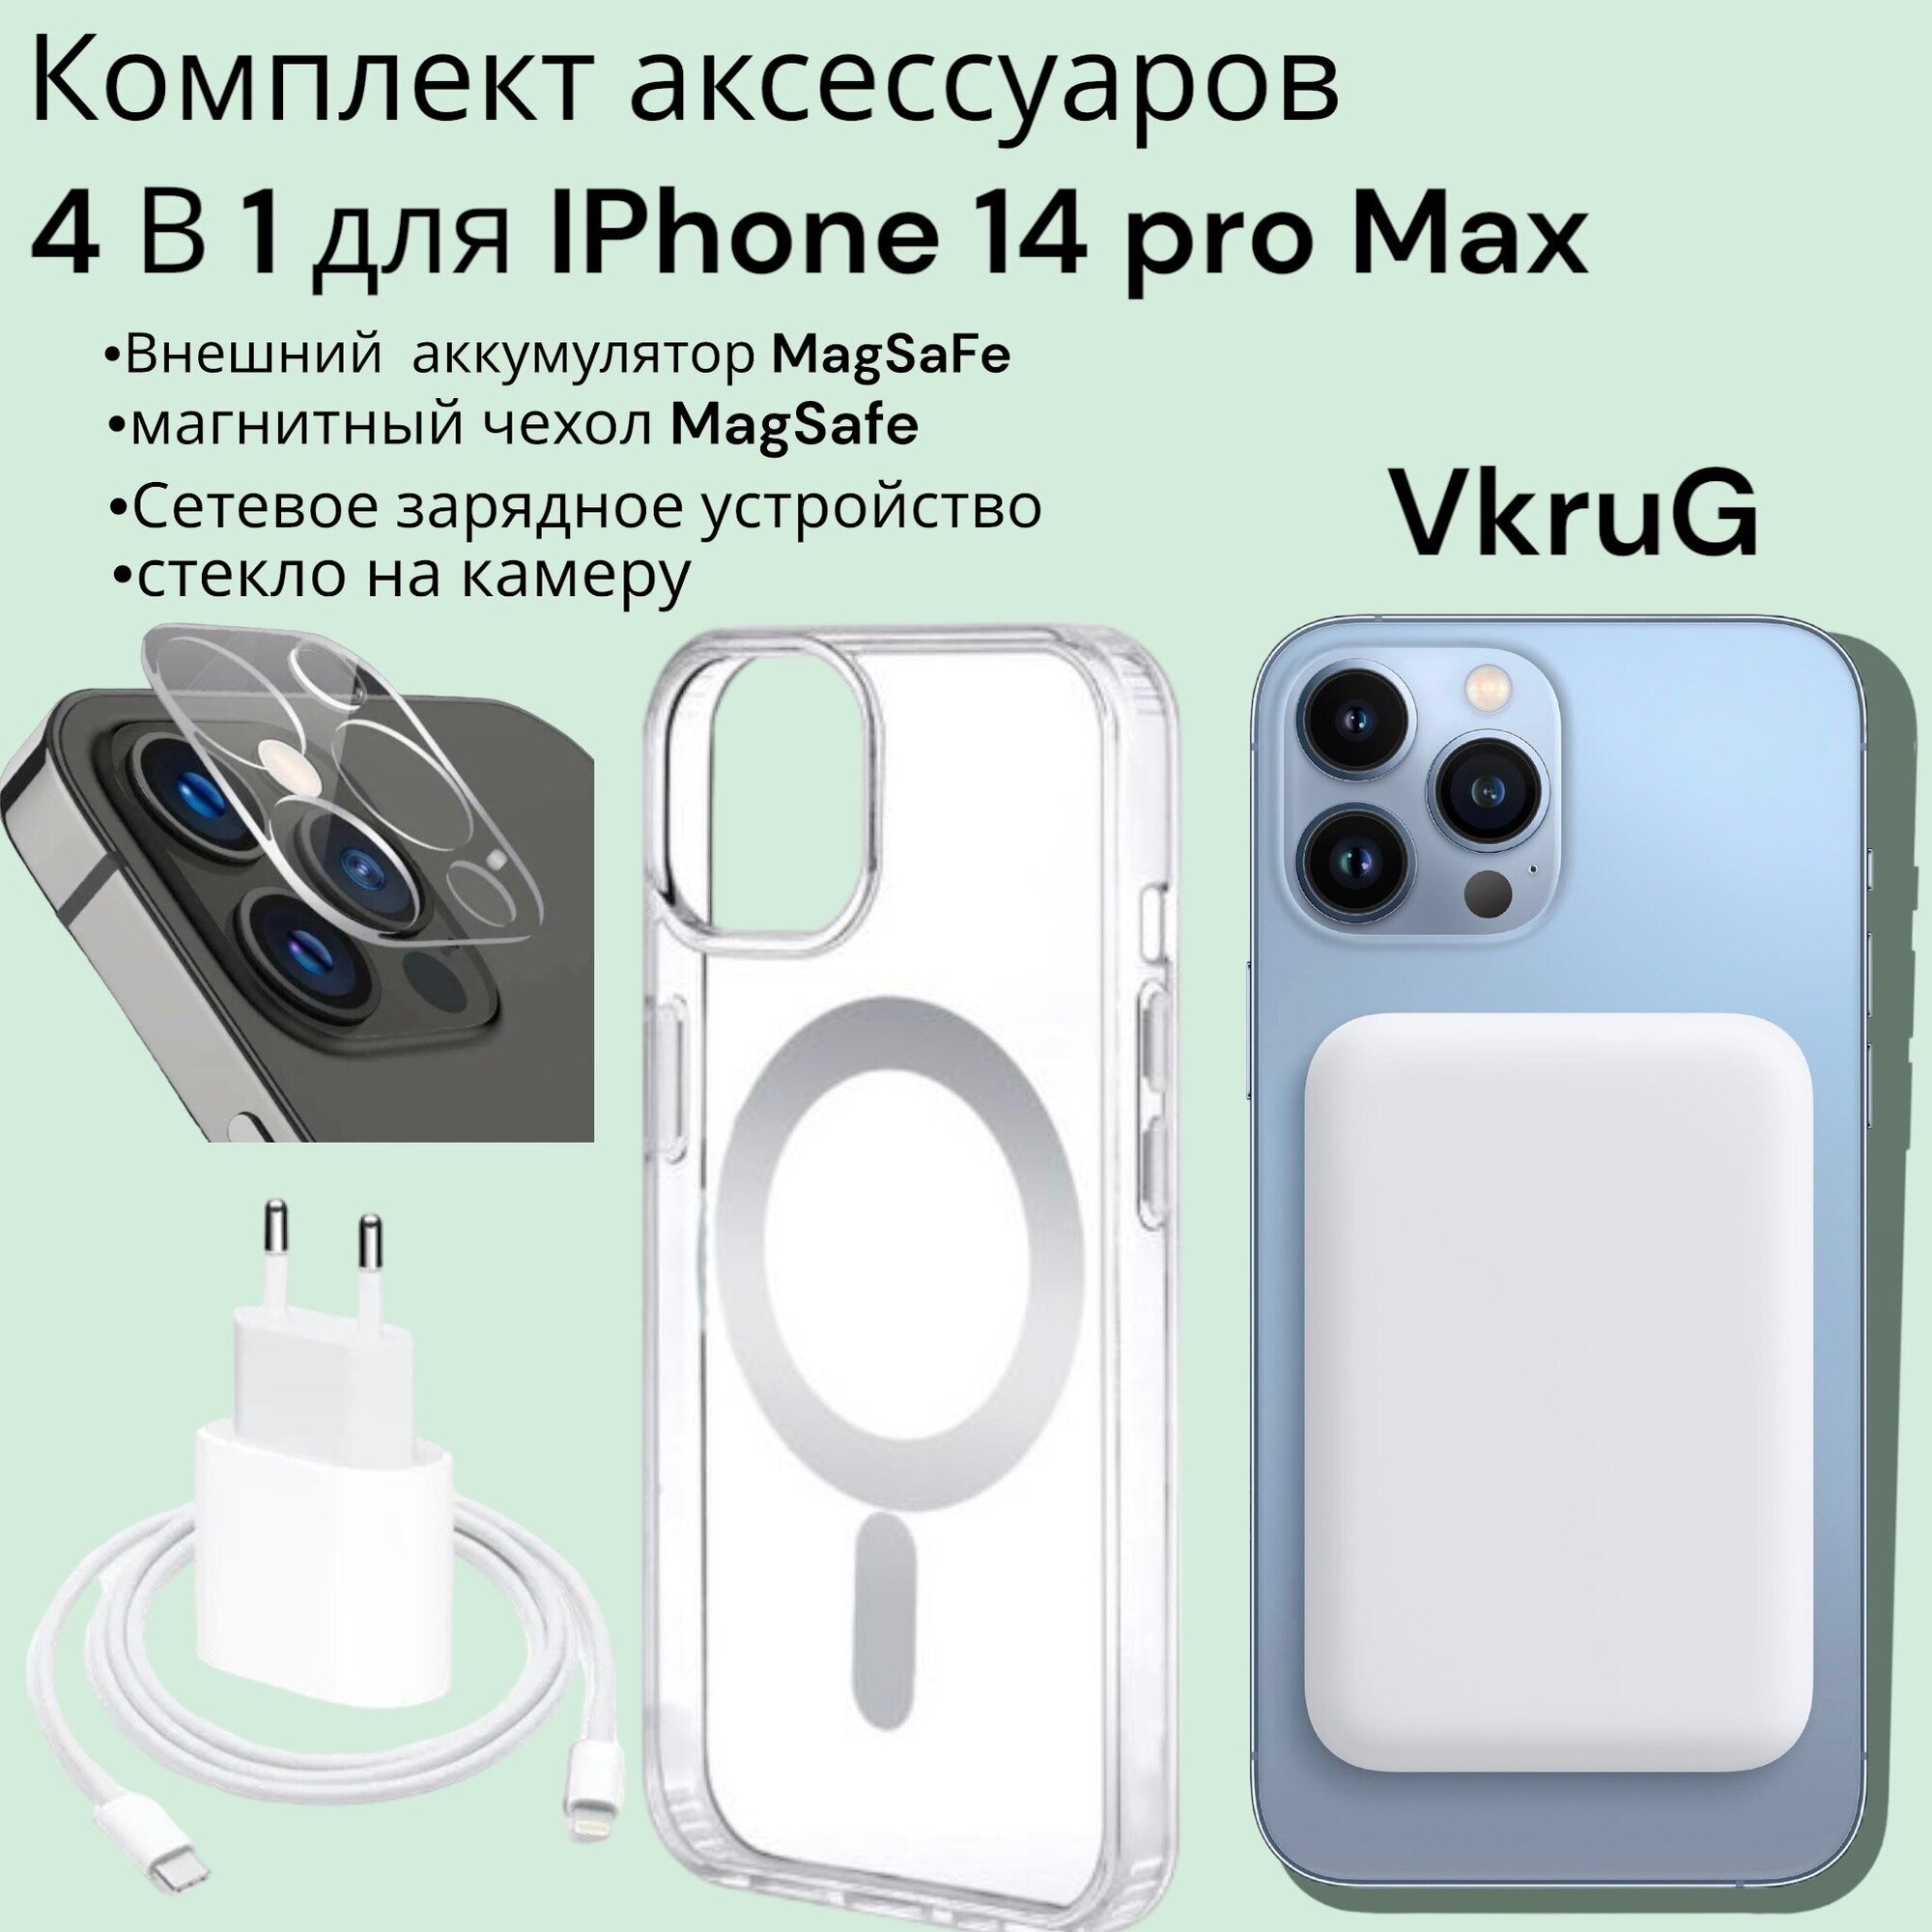 Комплект для Iphone 14 pro max/Айфон 14 про Макс: внешний аккумулятор Magsafe 5000 mAh, чехол Магсейф , зарядка для айфона, защита камеры